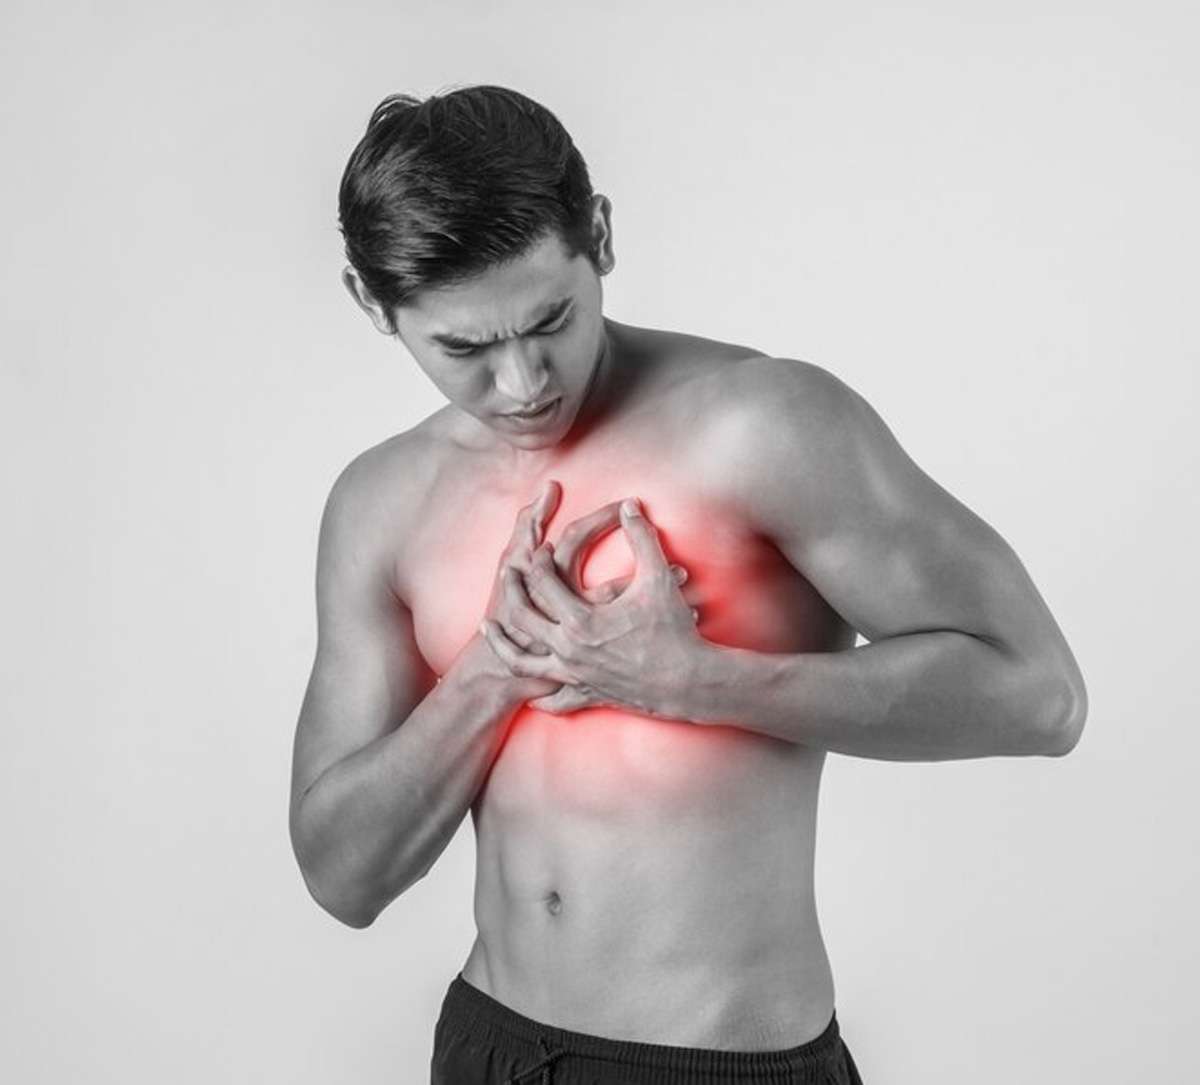 Heart Attack के लिए जिम्मेदार हैं ये 8 चीजें, आज से ही छोड़ दें वरना बना देगी दिल का मरीज